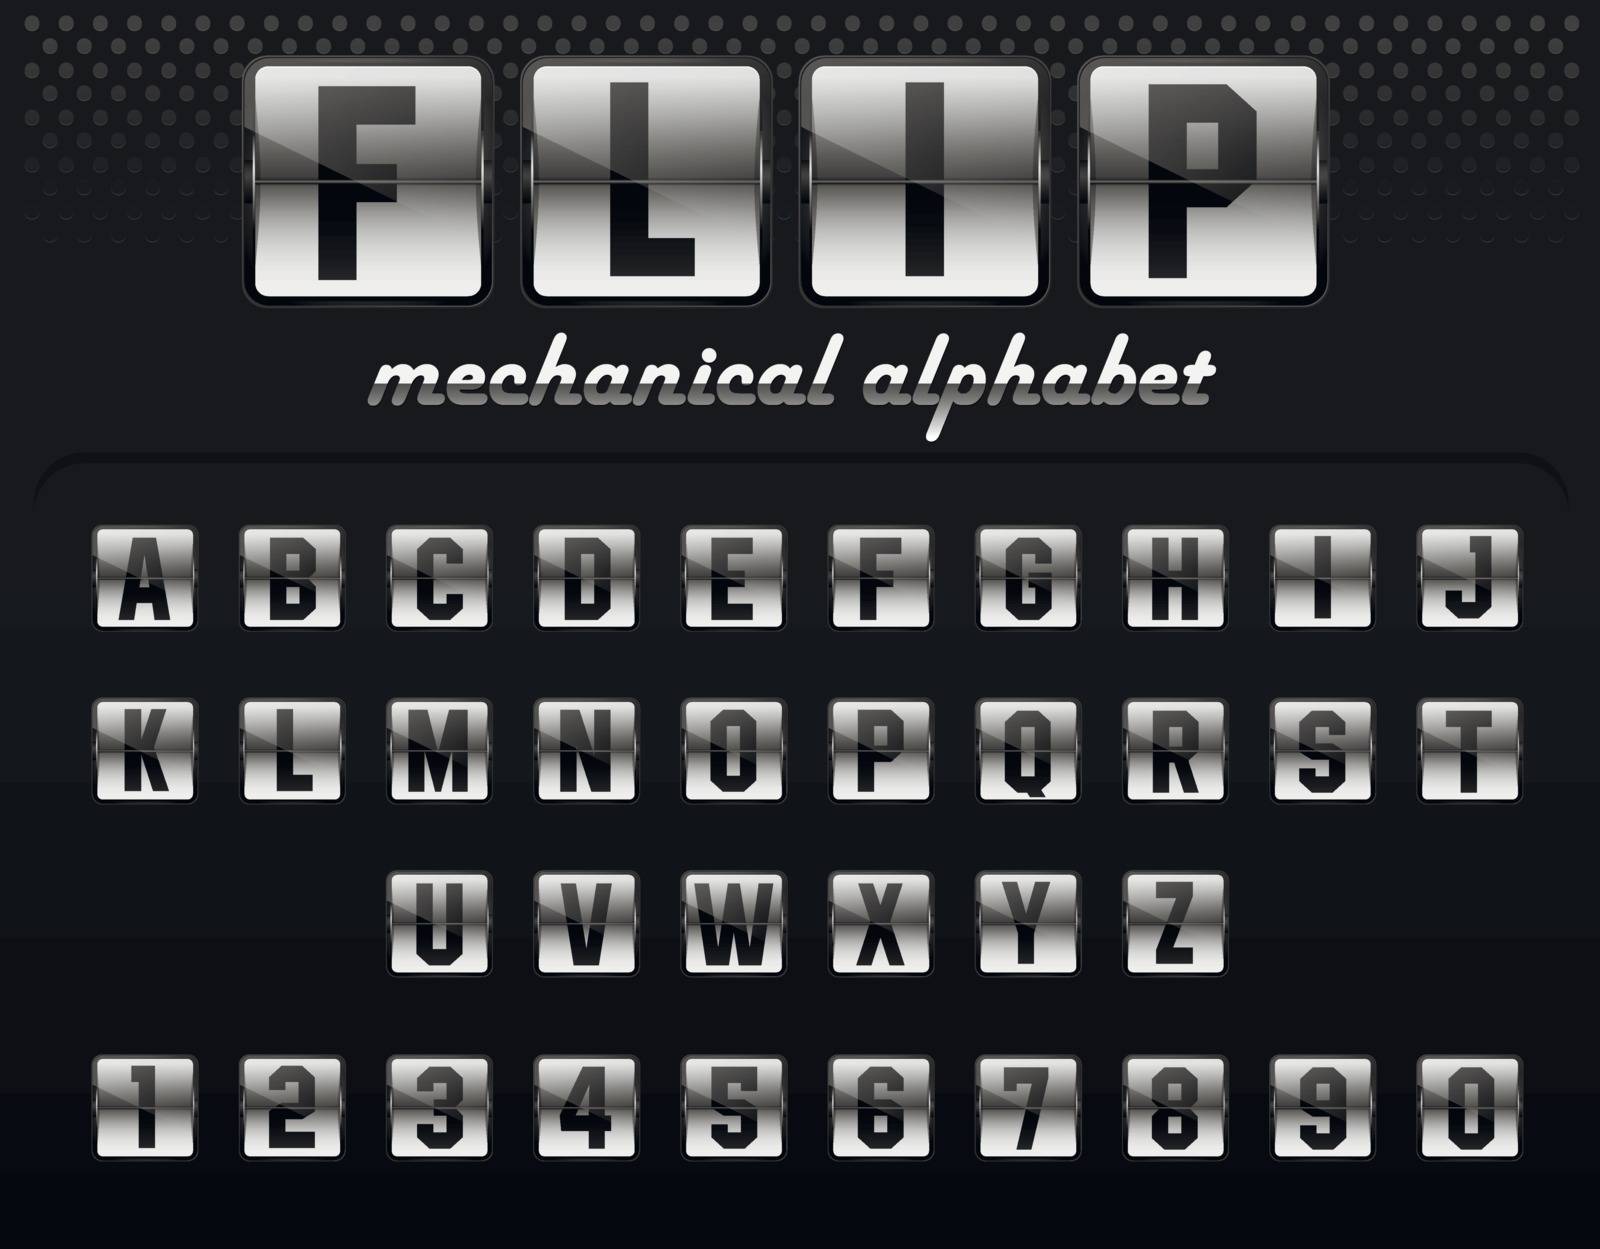 Flip board font set, mechanical display design. Vector flip alphabet illustration isolated on black background